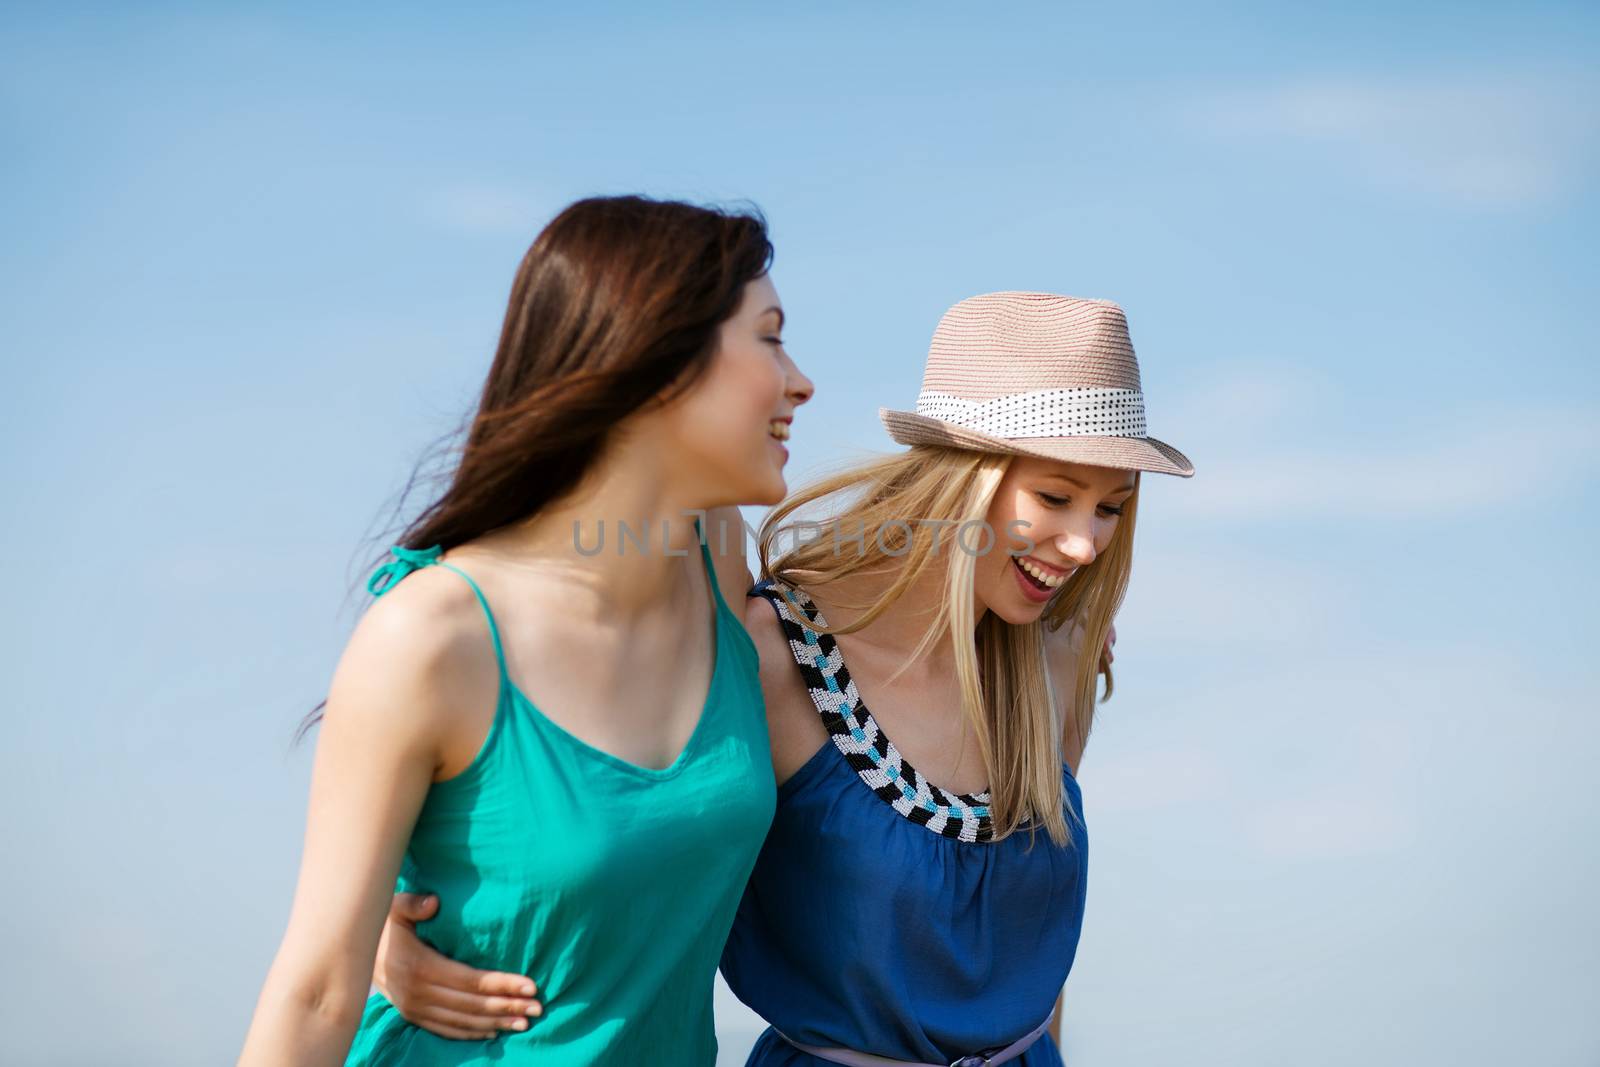 girls walking on the beach by dolgachov